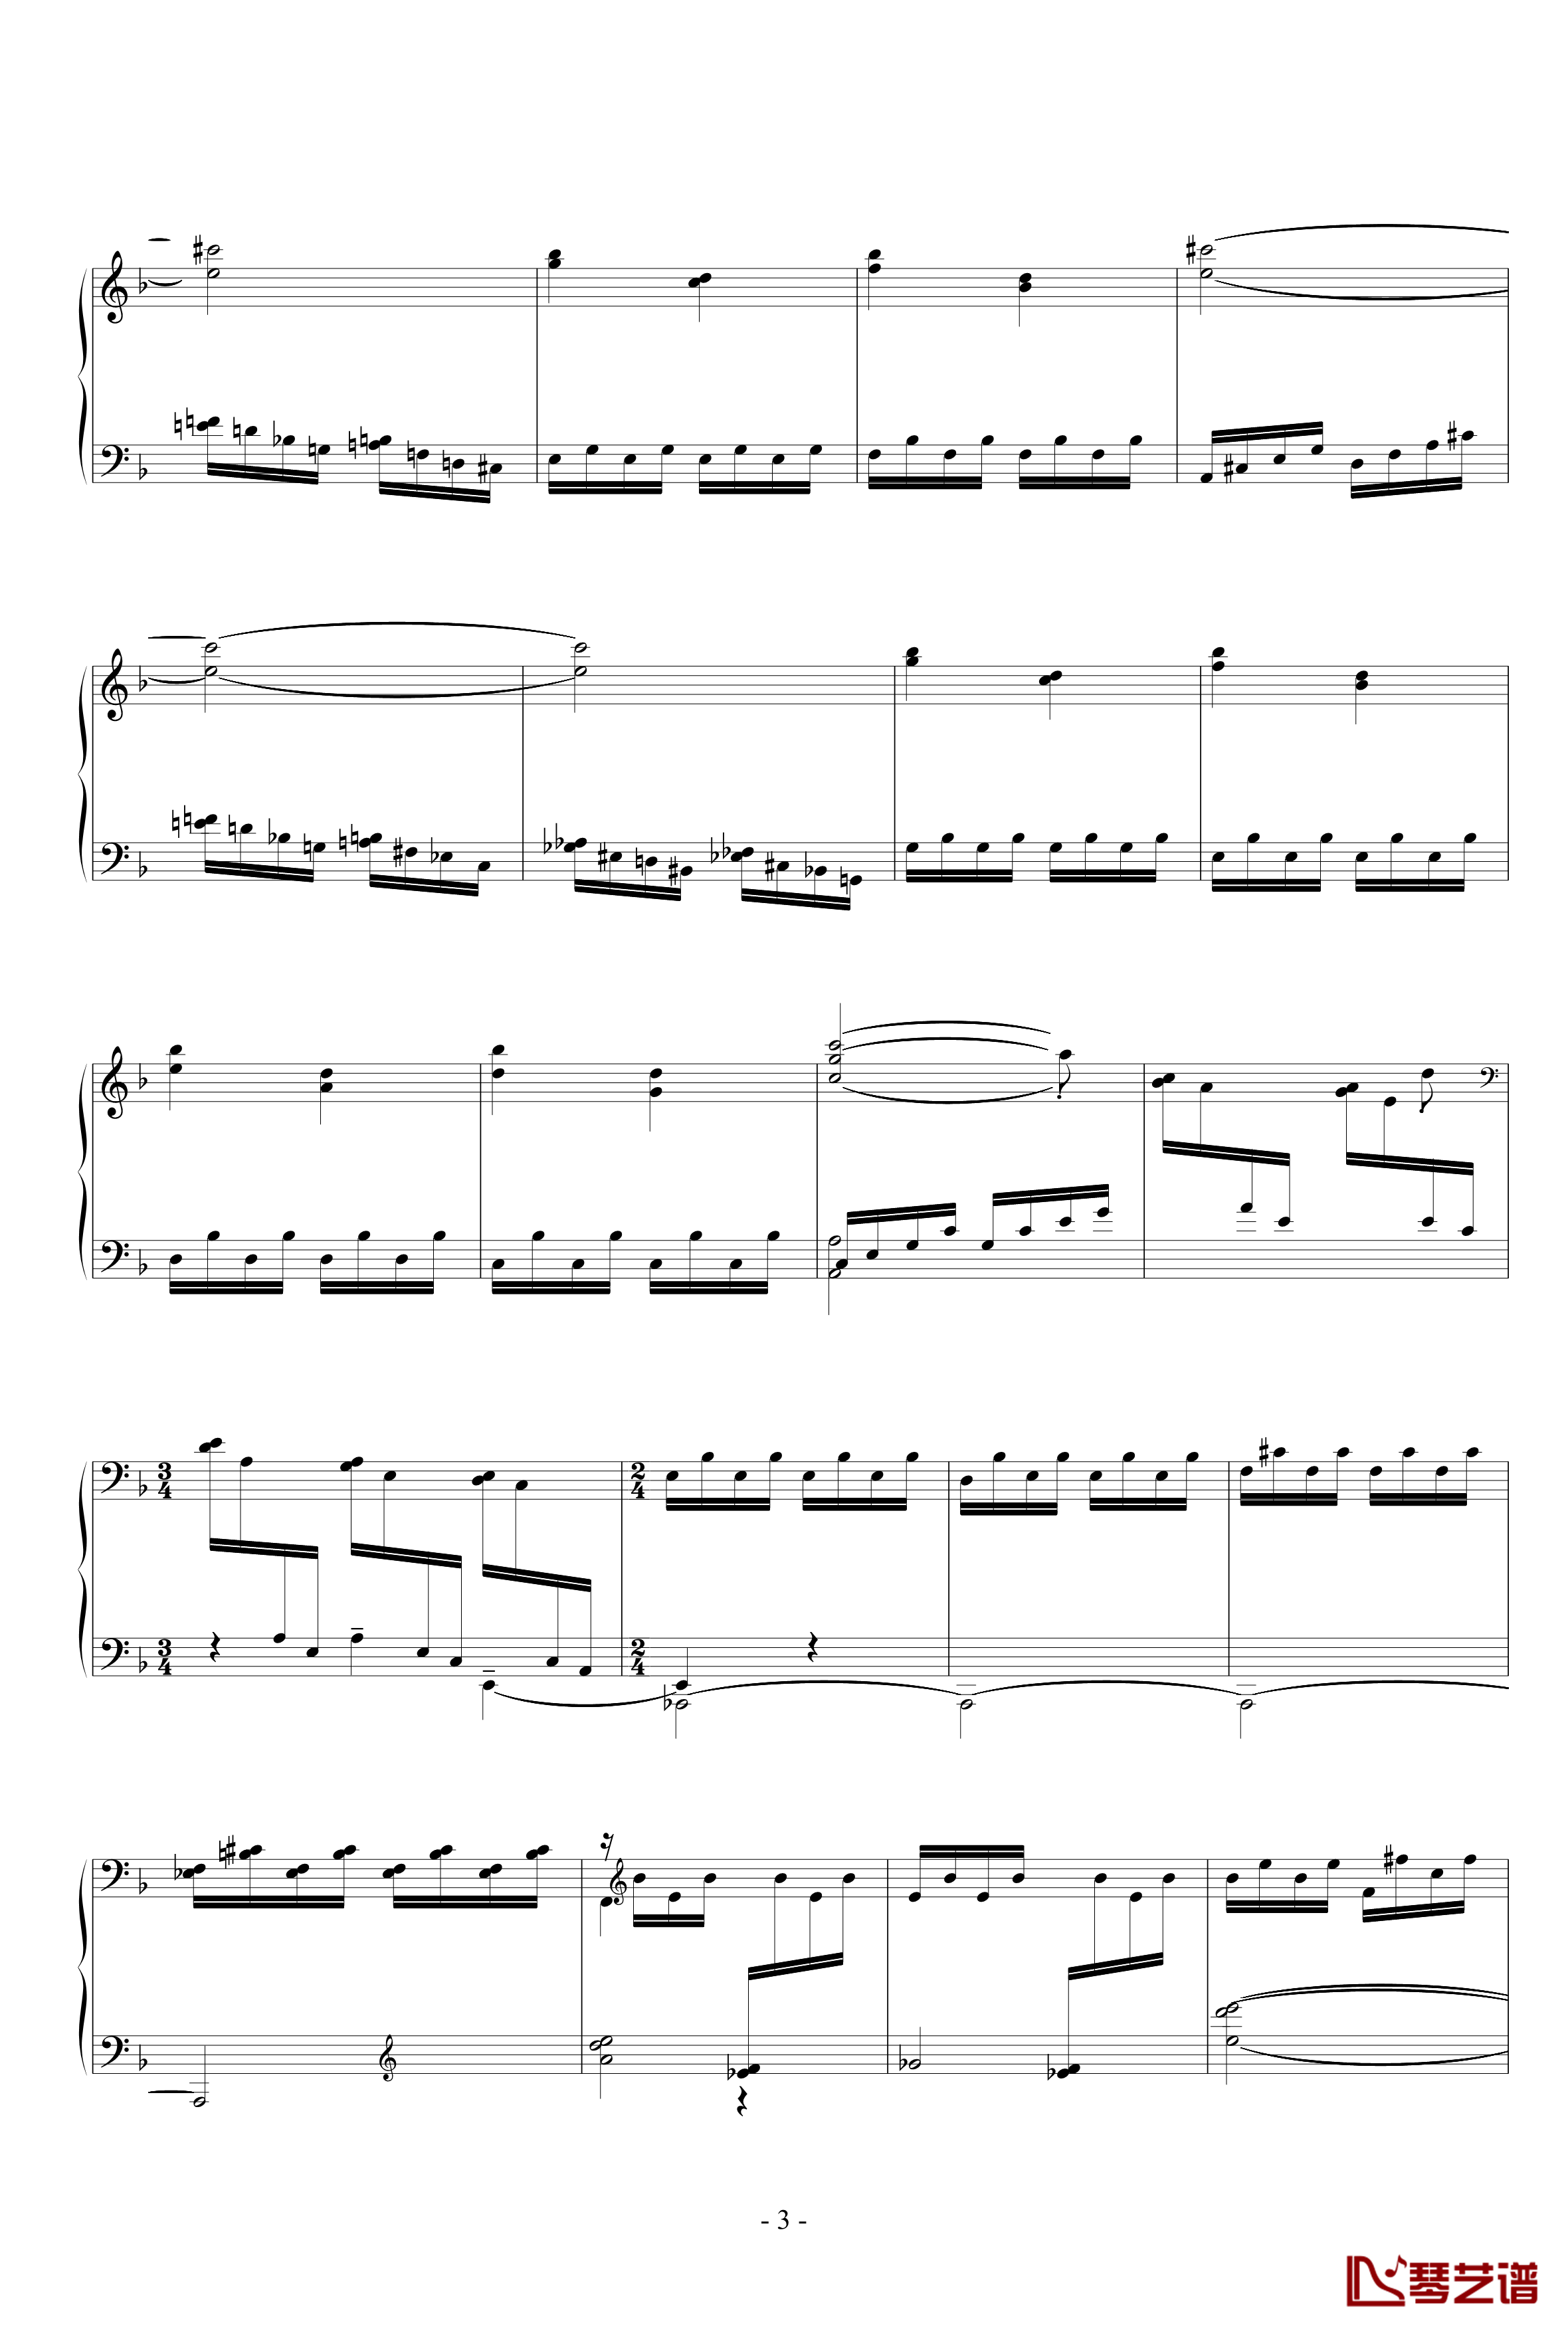 冥想集钢琴谱-修改-升c小调31